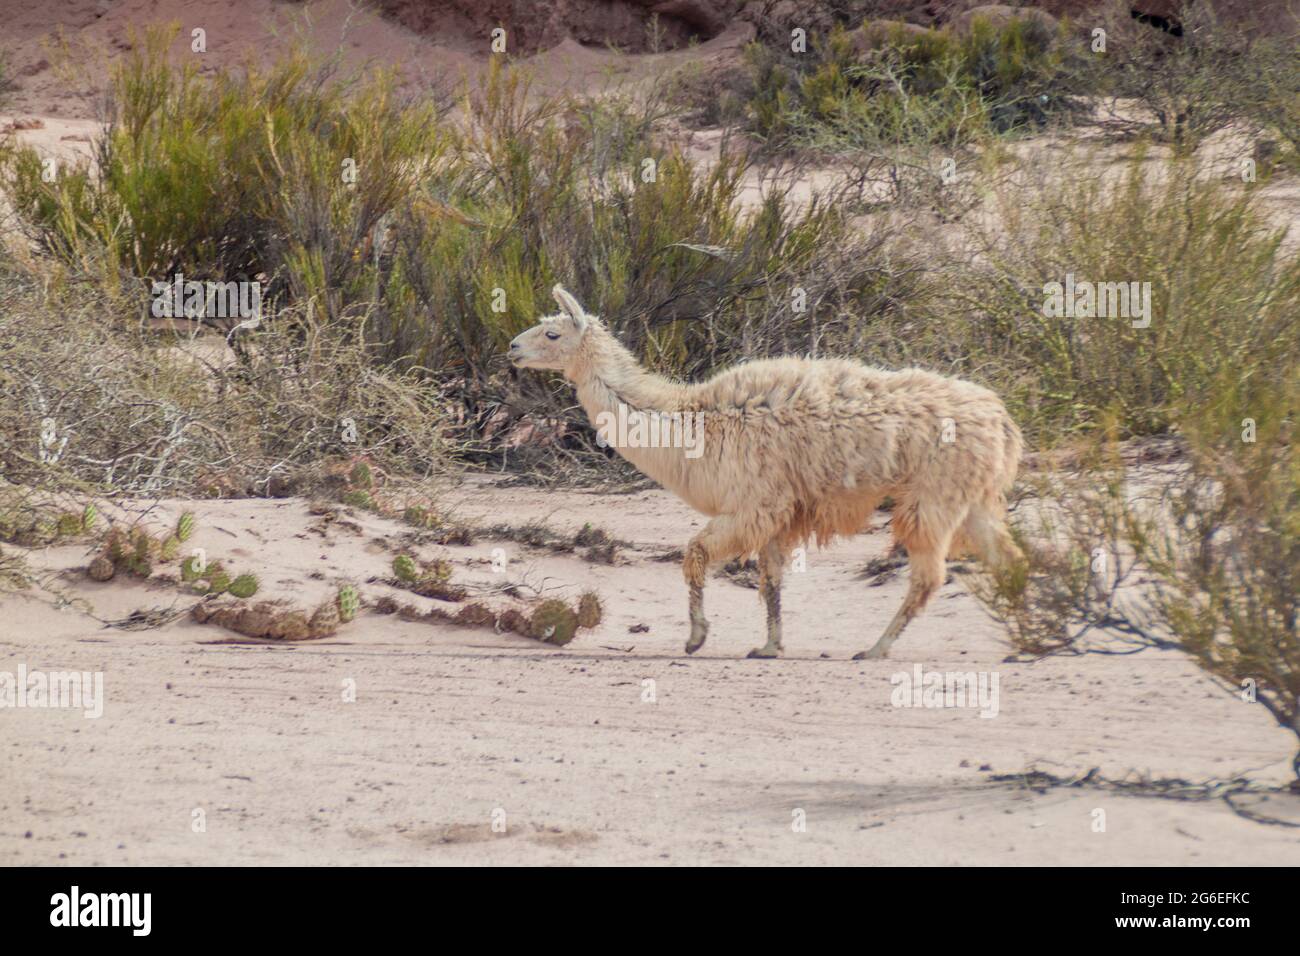 Lama marche à Quebrada de Cafayate, Argentine. Parc national Quebrada de las Conchas. Banque D'Images